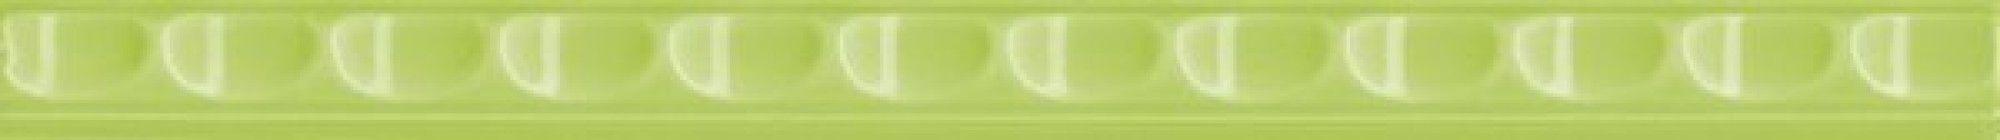 Бордюр Нефрит-Керамика Кураж-2 Трамплин салатный 1.3x20 30-178-30-03-40